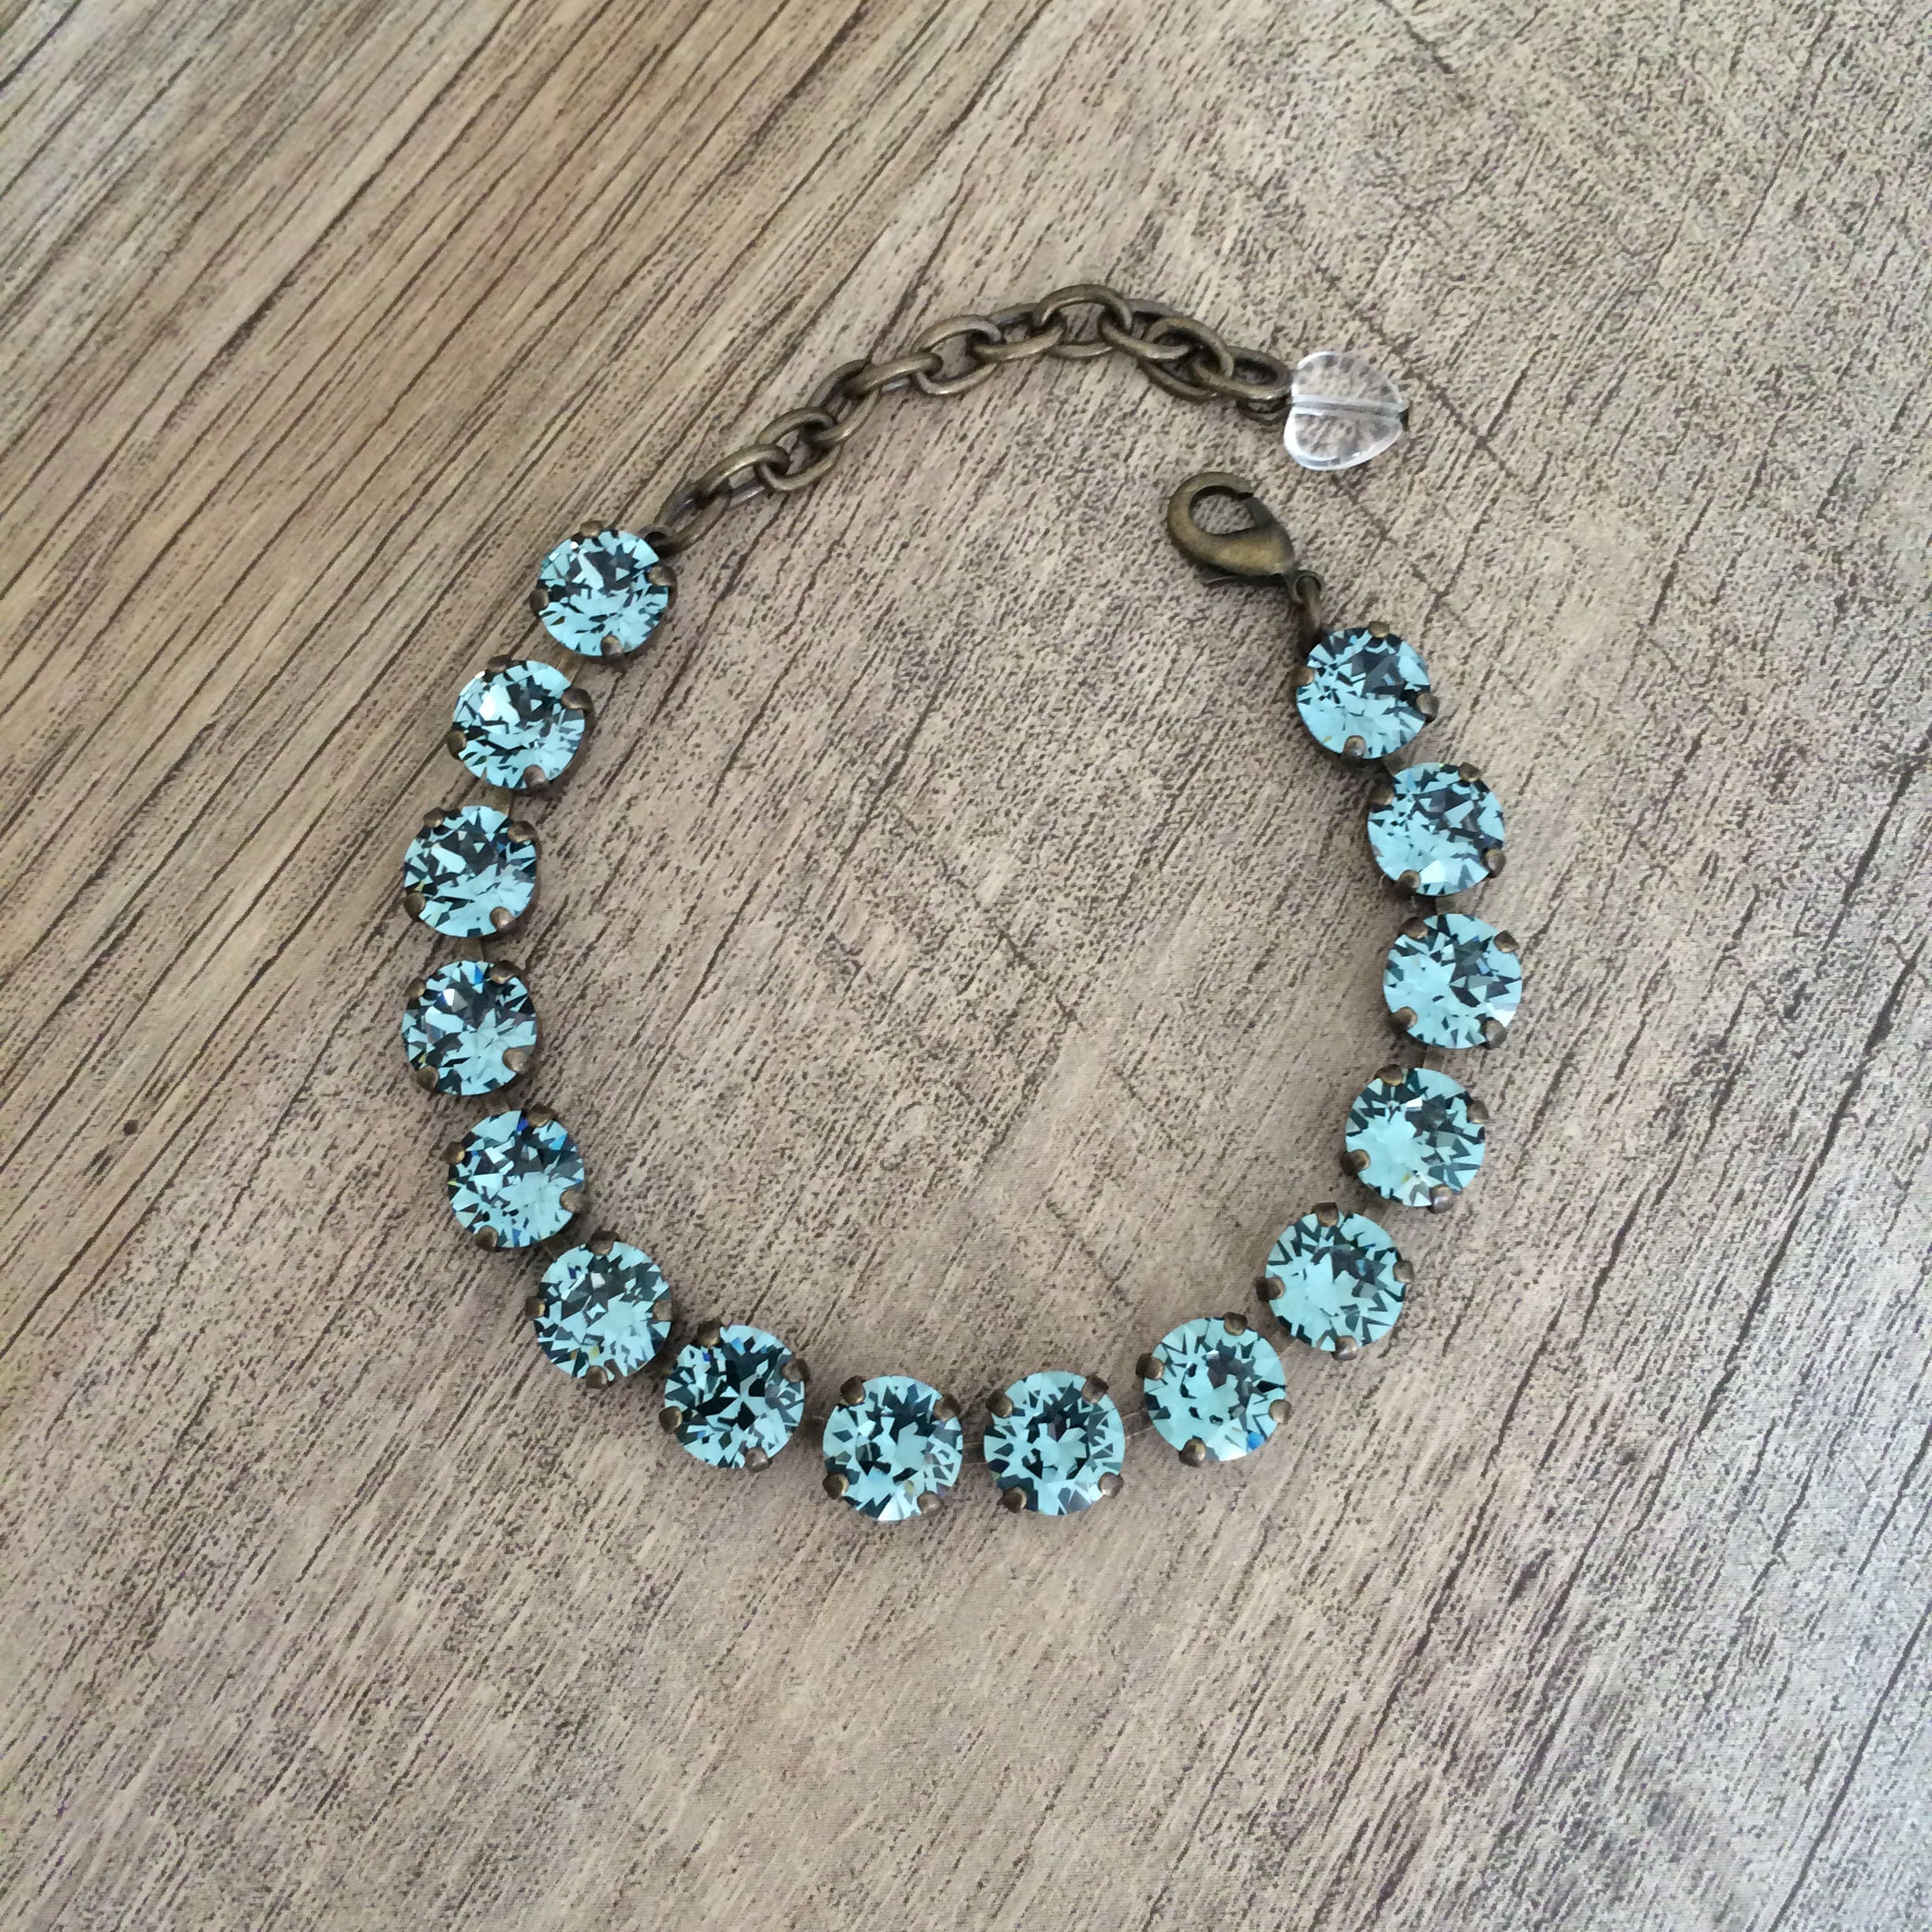 Swarovski Crystal 8mm Bracelet Indian Ocean Blue // Gifts for | Etsy